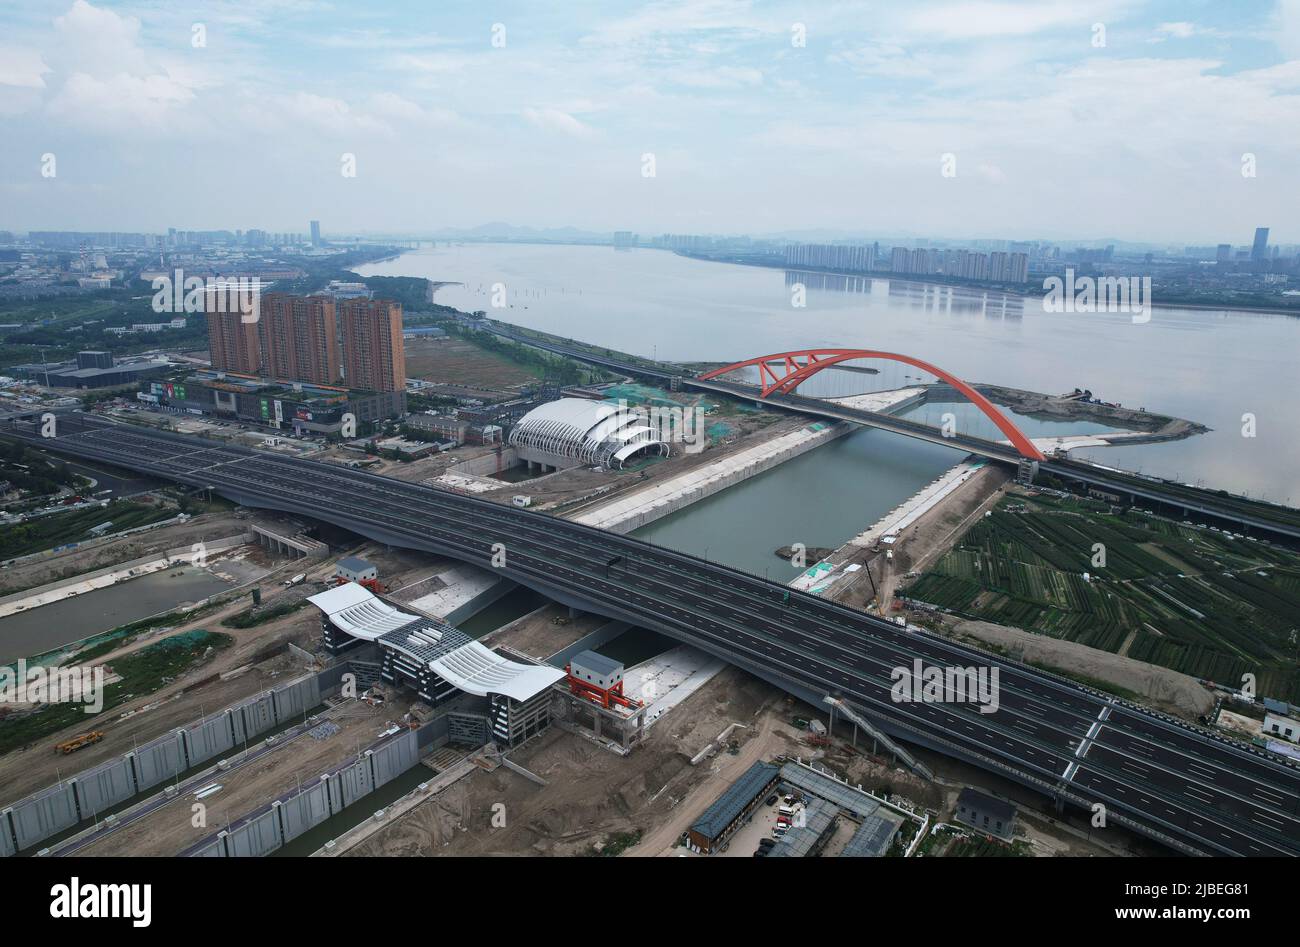 HANGZHOU, CHINA - 6. JUNI 2022 - eine Luftaufnahme der Schleuse Babao Ship, einem wichtigen Kontrollprojekt des Großen Kanals Peking-Hangzhou, in Hangzhou, Ost-C Stockfoto